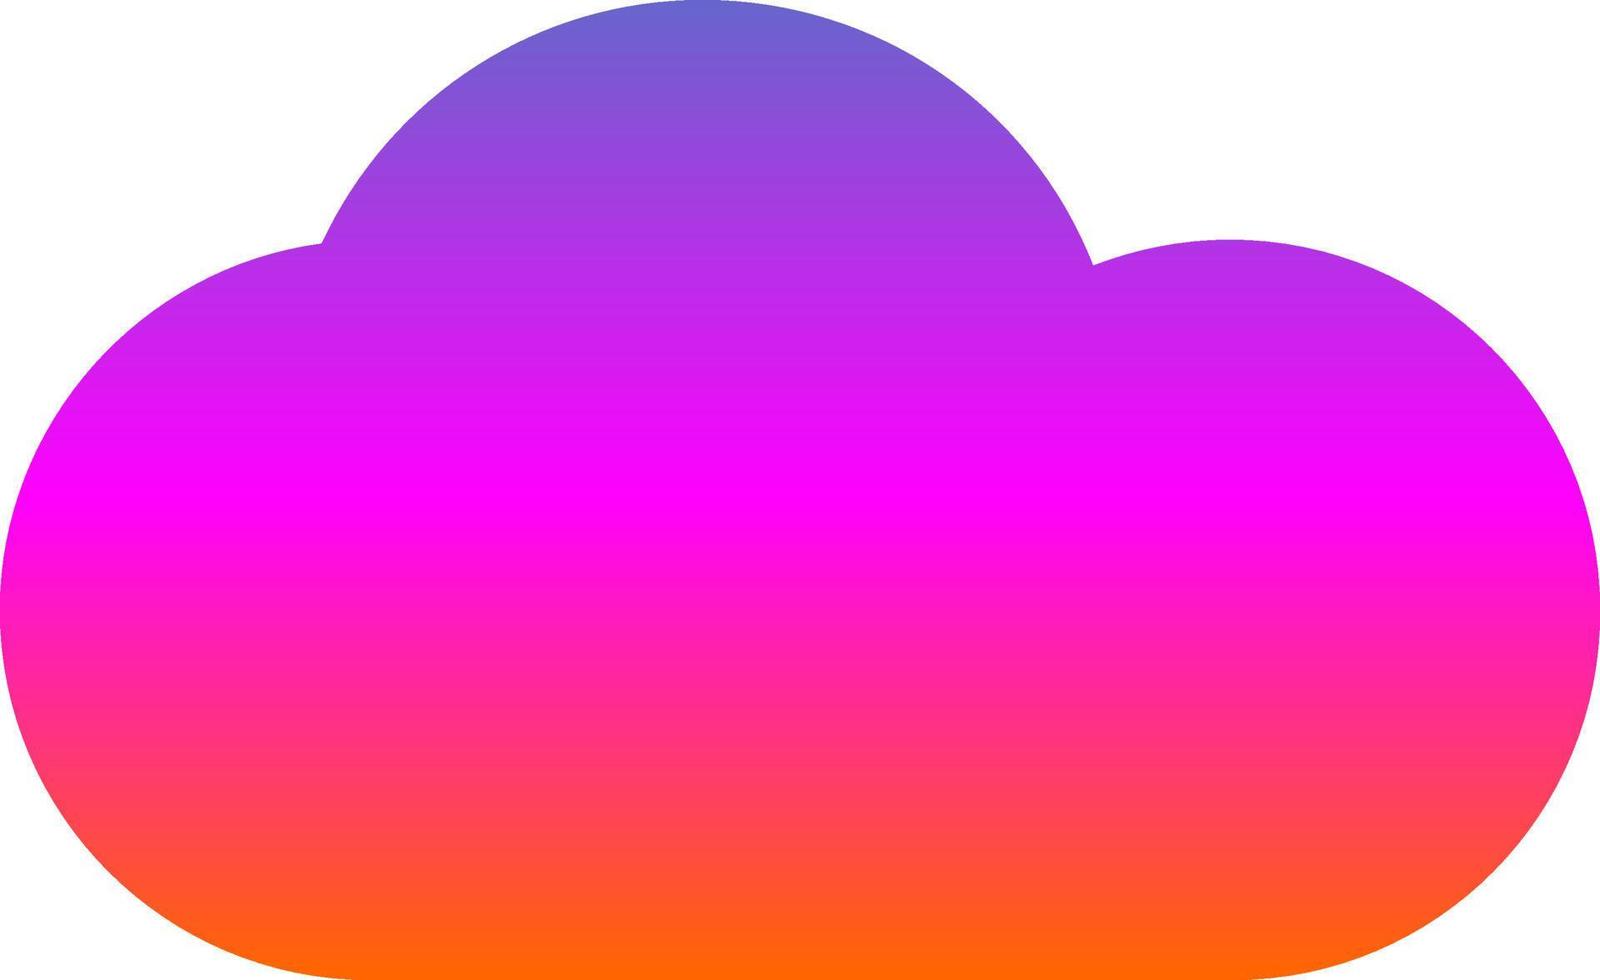 design de ícone de vetor de nuvem